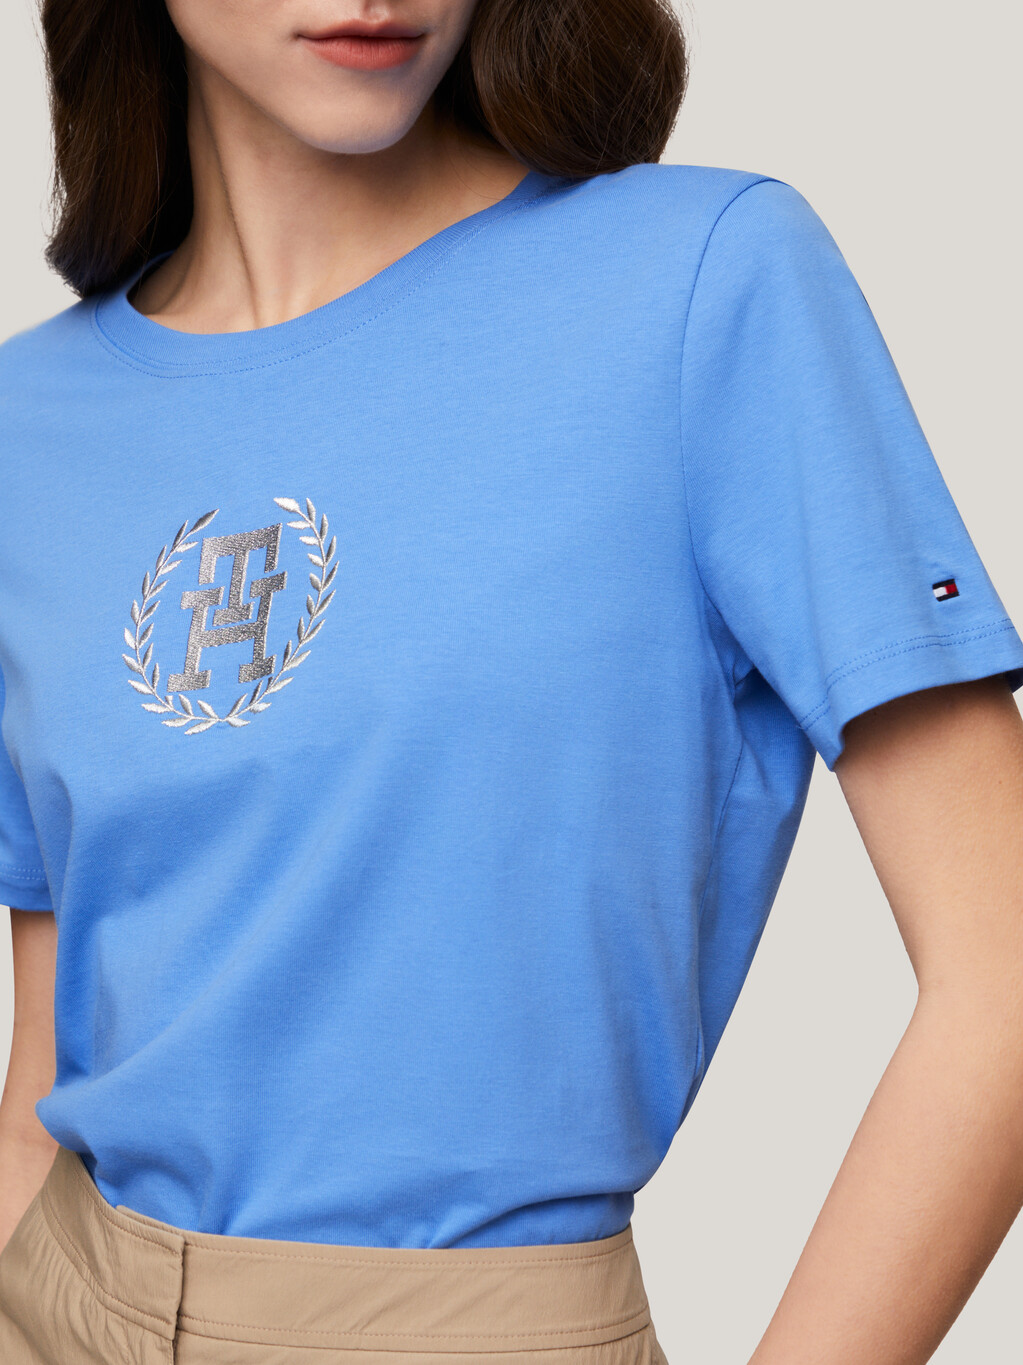 TH Monogram圓領 T 恤, Blue Spell, hi-res